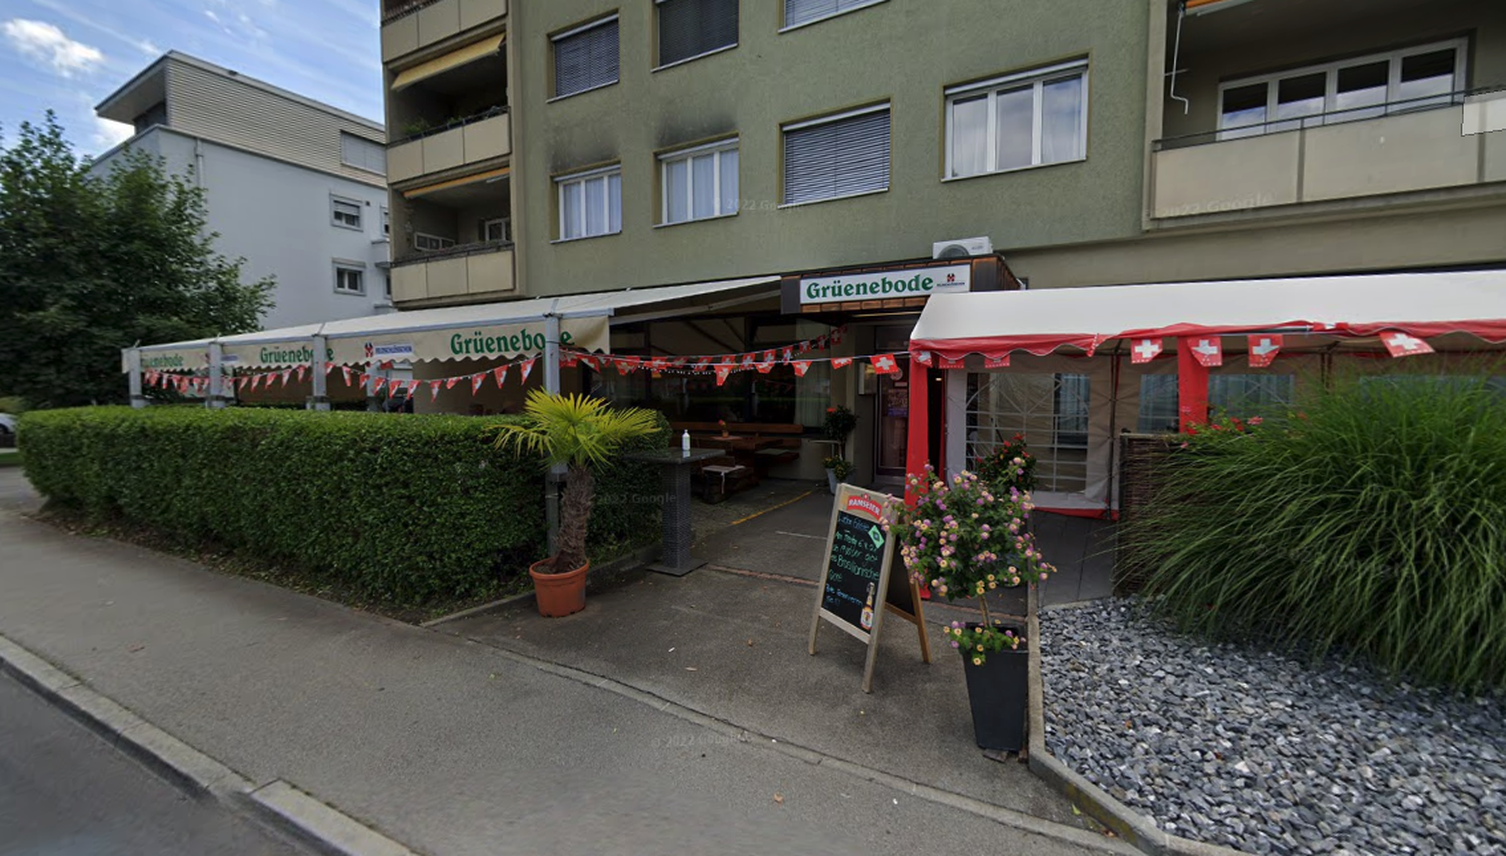 Restaurant Grüenebode in Kriens schliesst